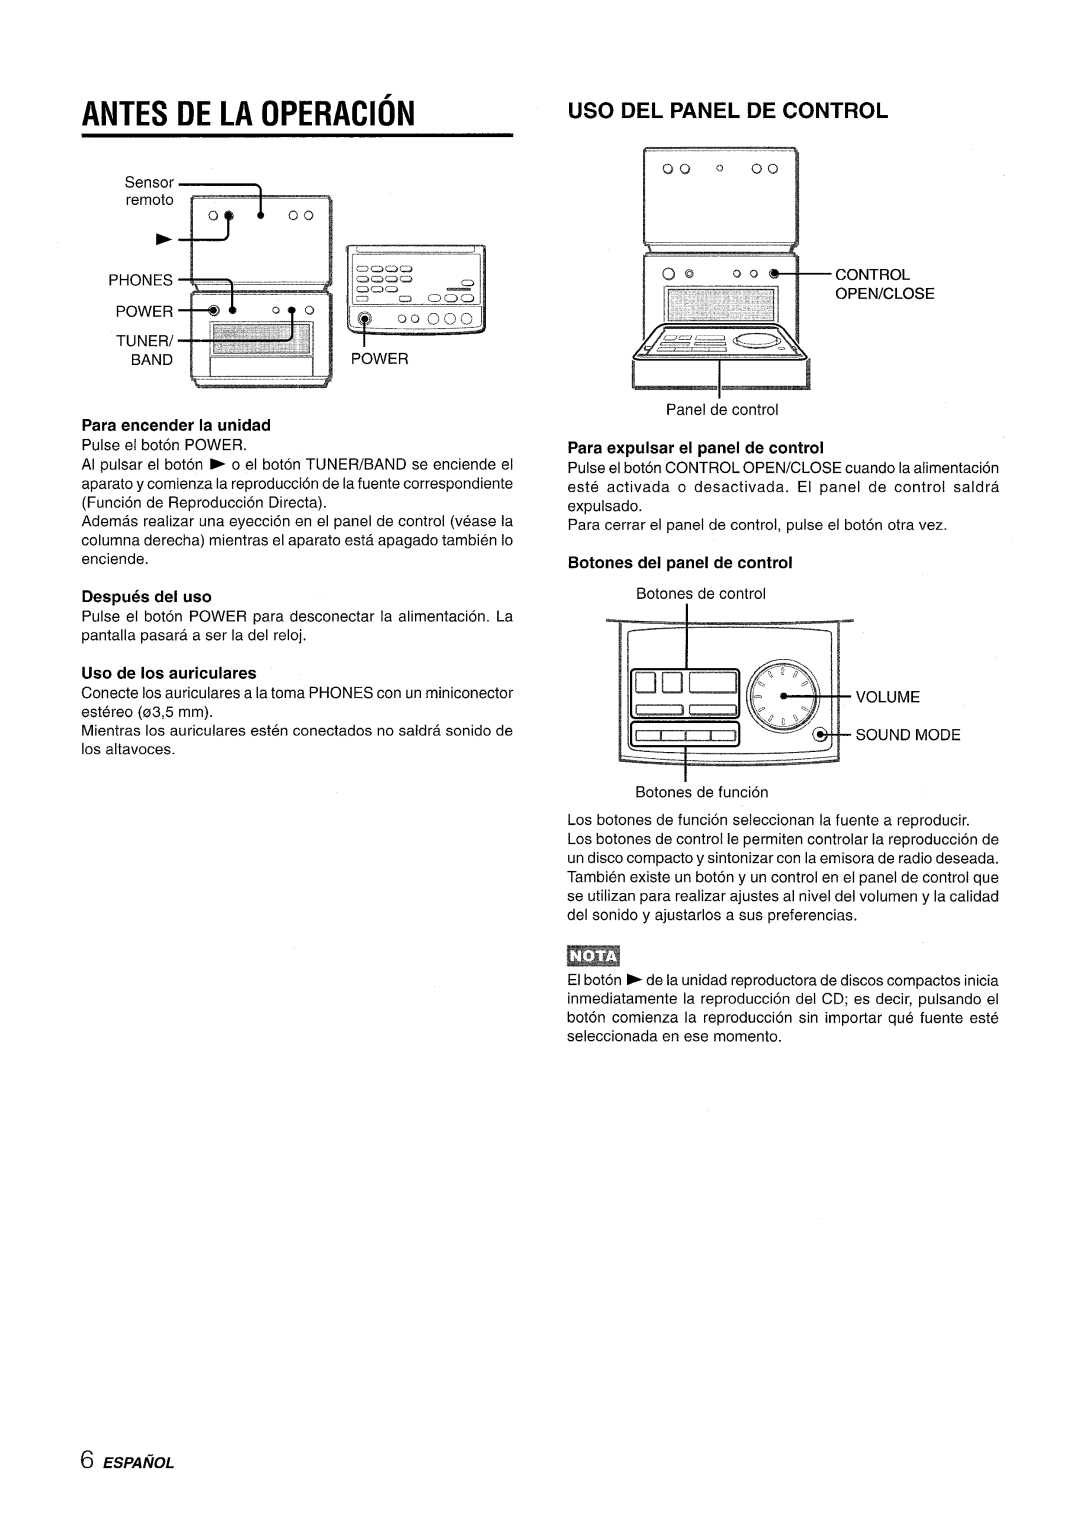 Aiwa XR-M70 manual Antes De La Operacion, Uso Del Panel De Control, Para encender la unidad, Despues del uso, Espanol 